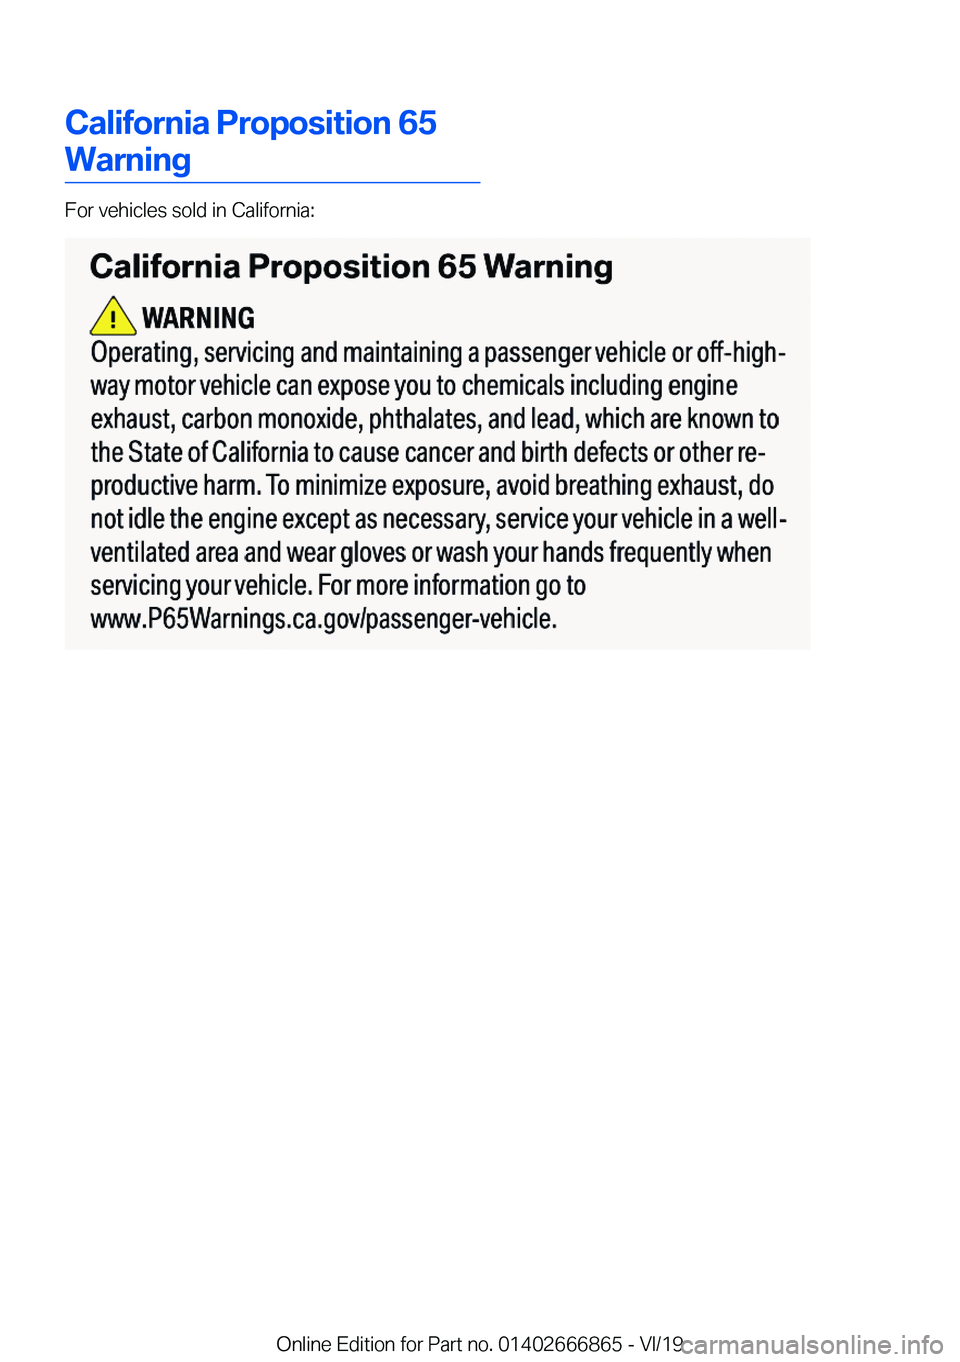 BMW X3 M 2020  Owners Manual �C�a�l�i�f�o�r�n�i�a��P�r�o�p�o�s�i�t�i�o�n��6�5
�W�a�r�n�i�n�g
�F�o�r��v�e�h�i�c�l�e�s��s�o�l�d��i�n��C�a�l�i�f�o�r�n�i�a�:
�O�n�l�i�n�e��E�d�i�t�i�o�n��f�o�r��P�a�r�t��n�o�.��0�1�4�0�2�6�